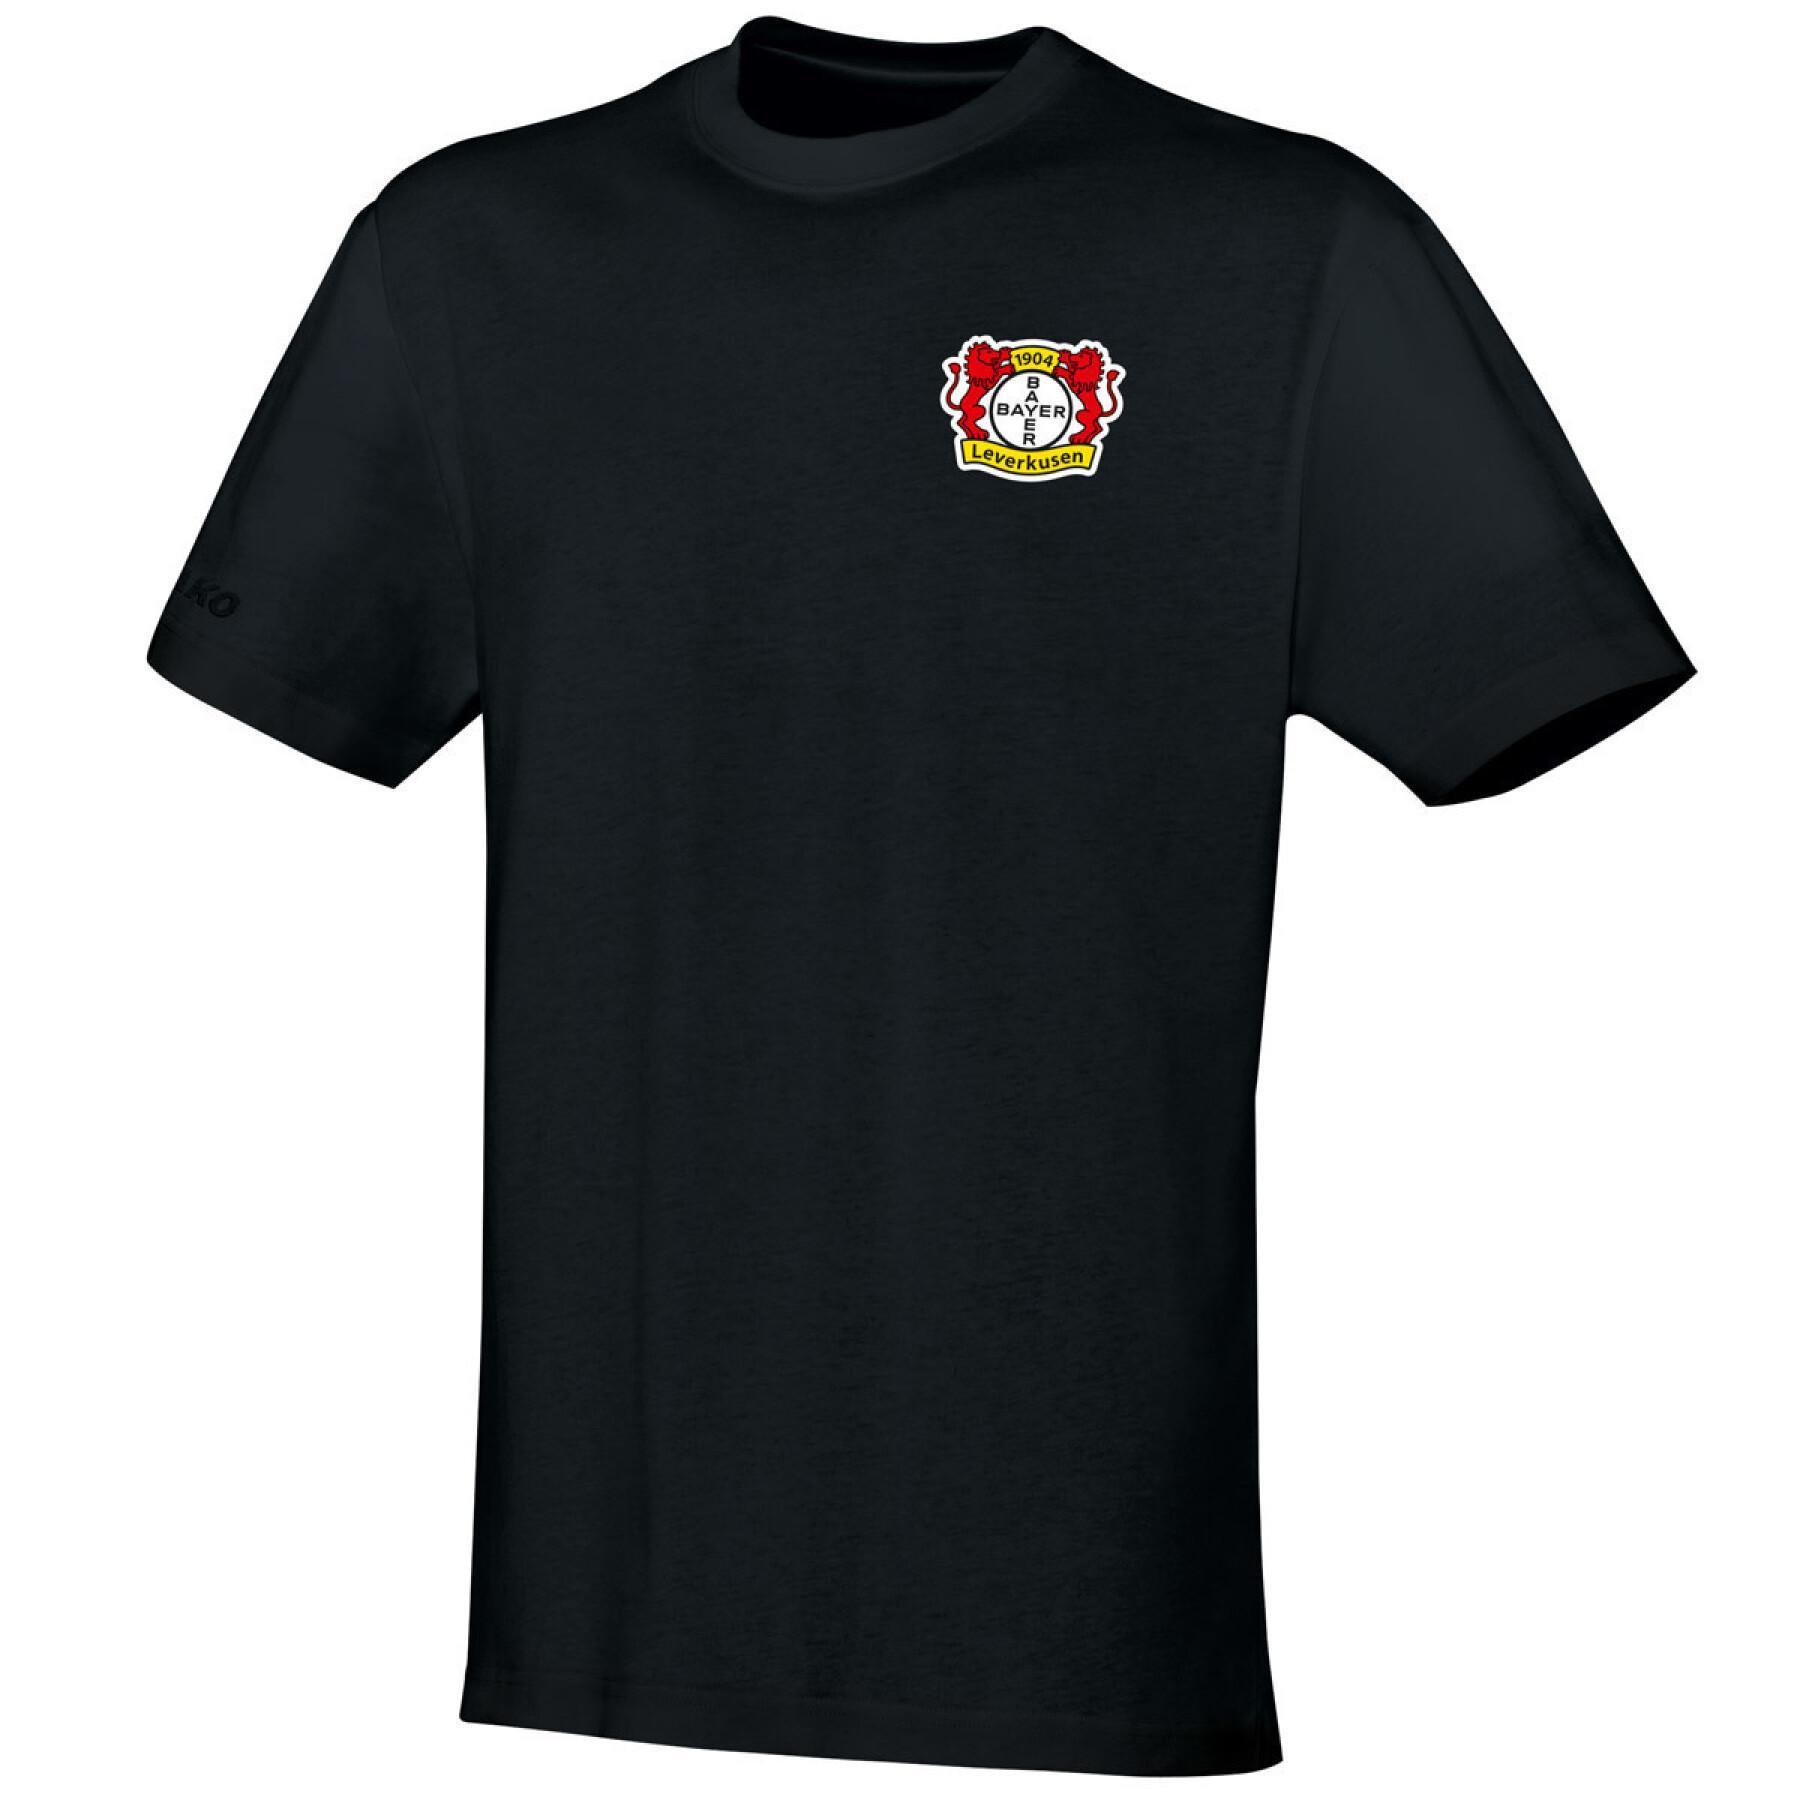 T-shirt femme Bayer Leverkusen Team 2019/20